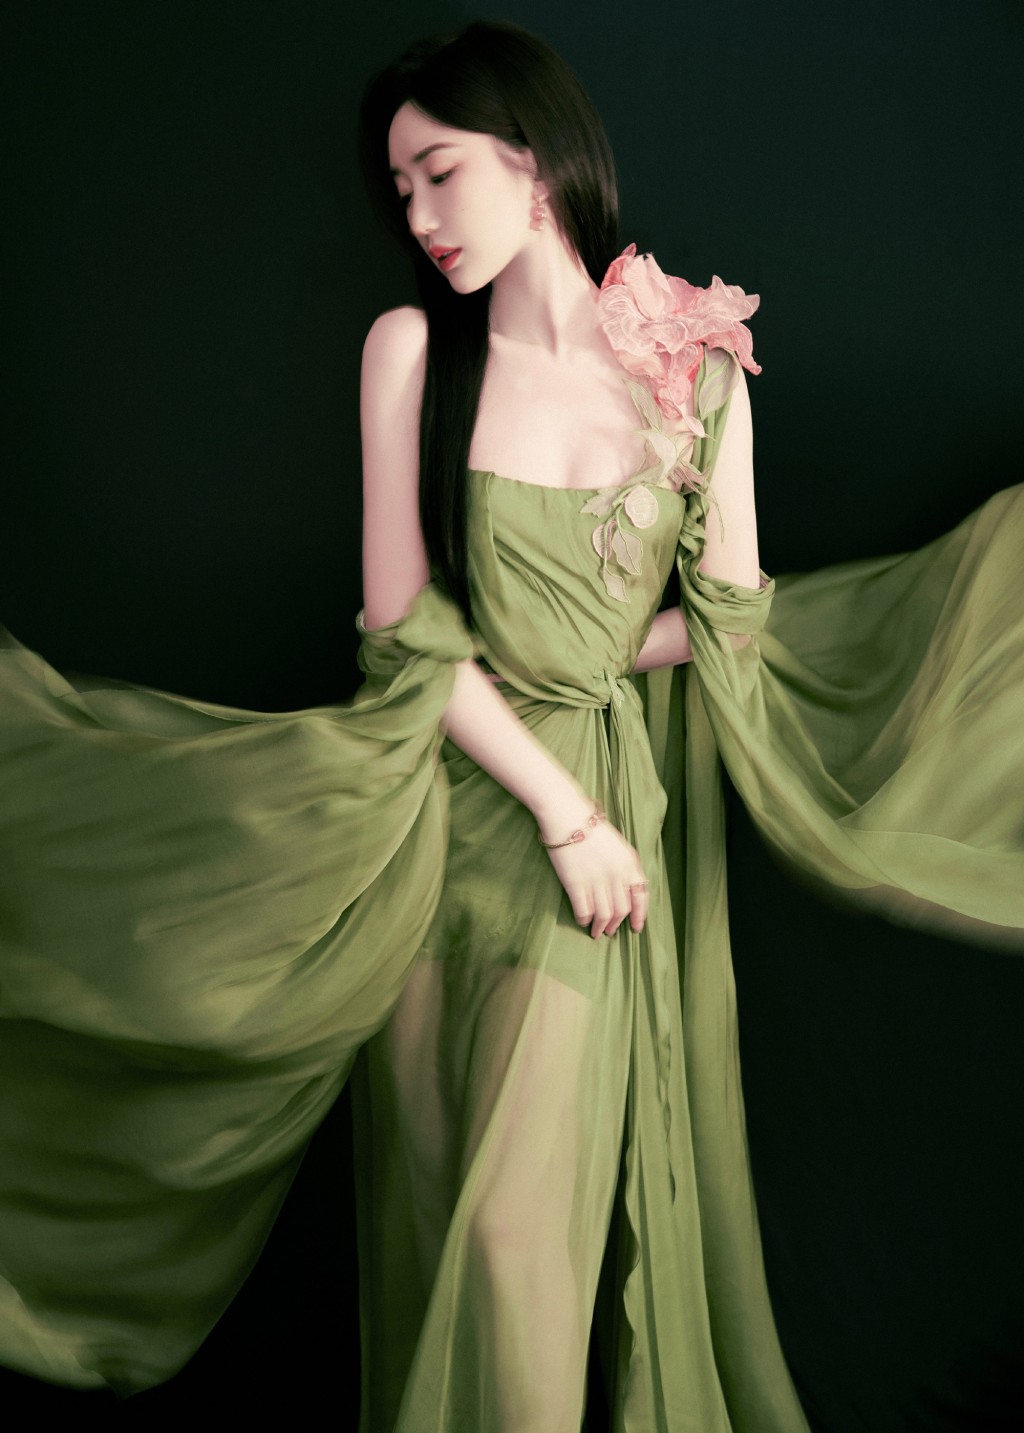 毛晓彤清新绿色长裙优雅风情写真图片